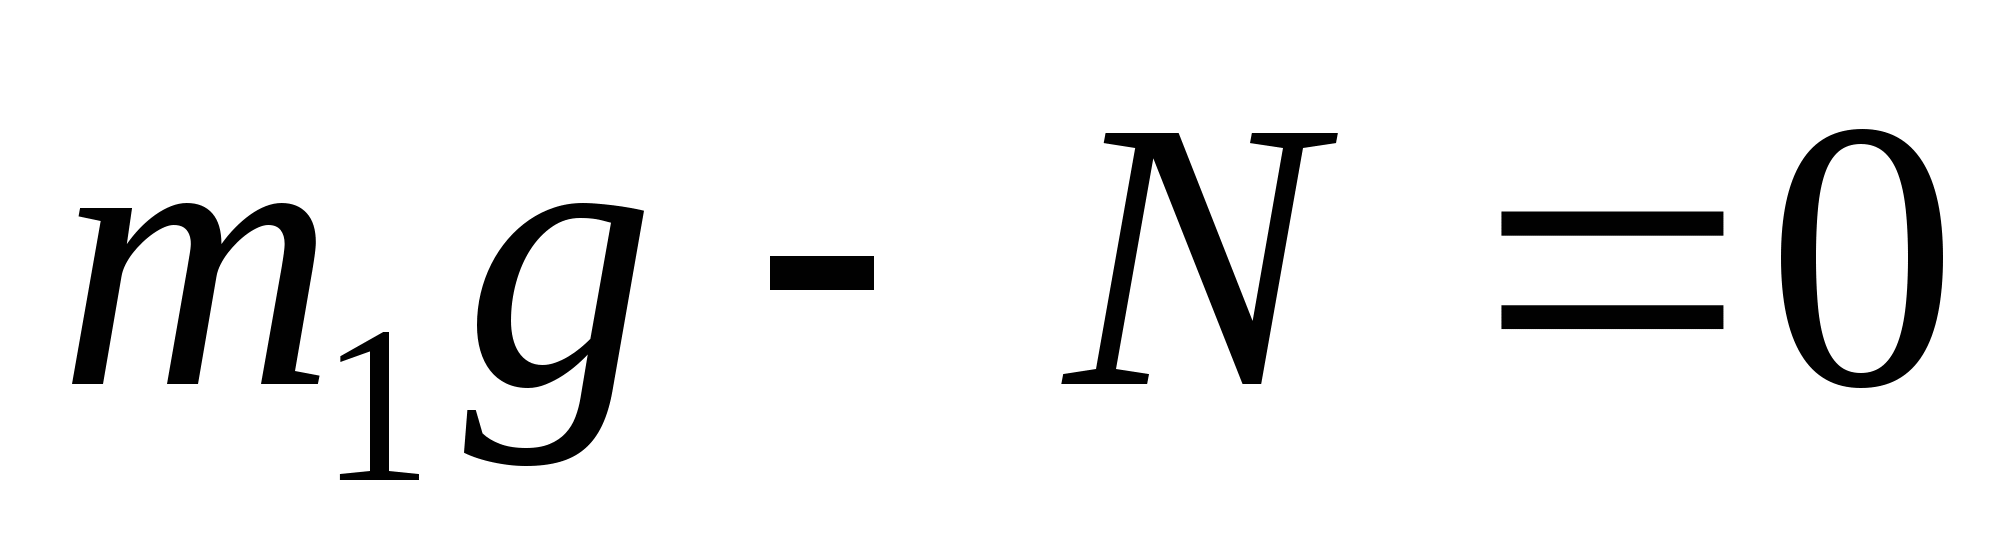 Поурочный план по физике Решение задач на 2 закон Ньютона